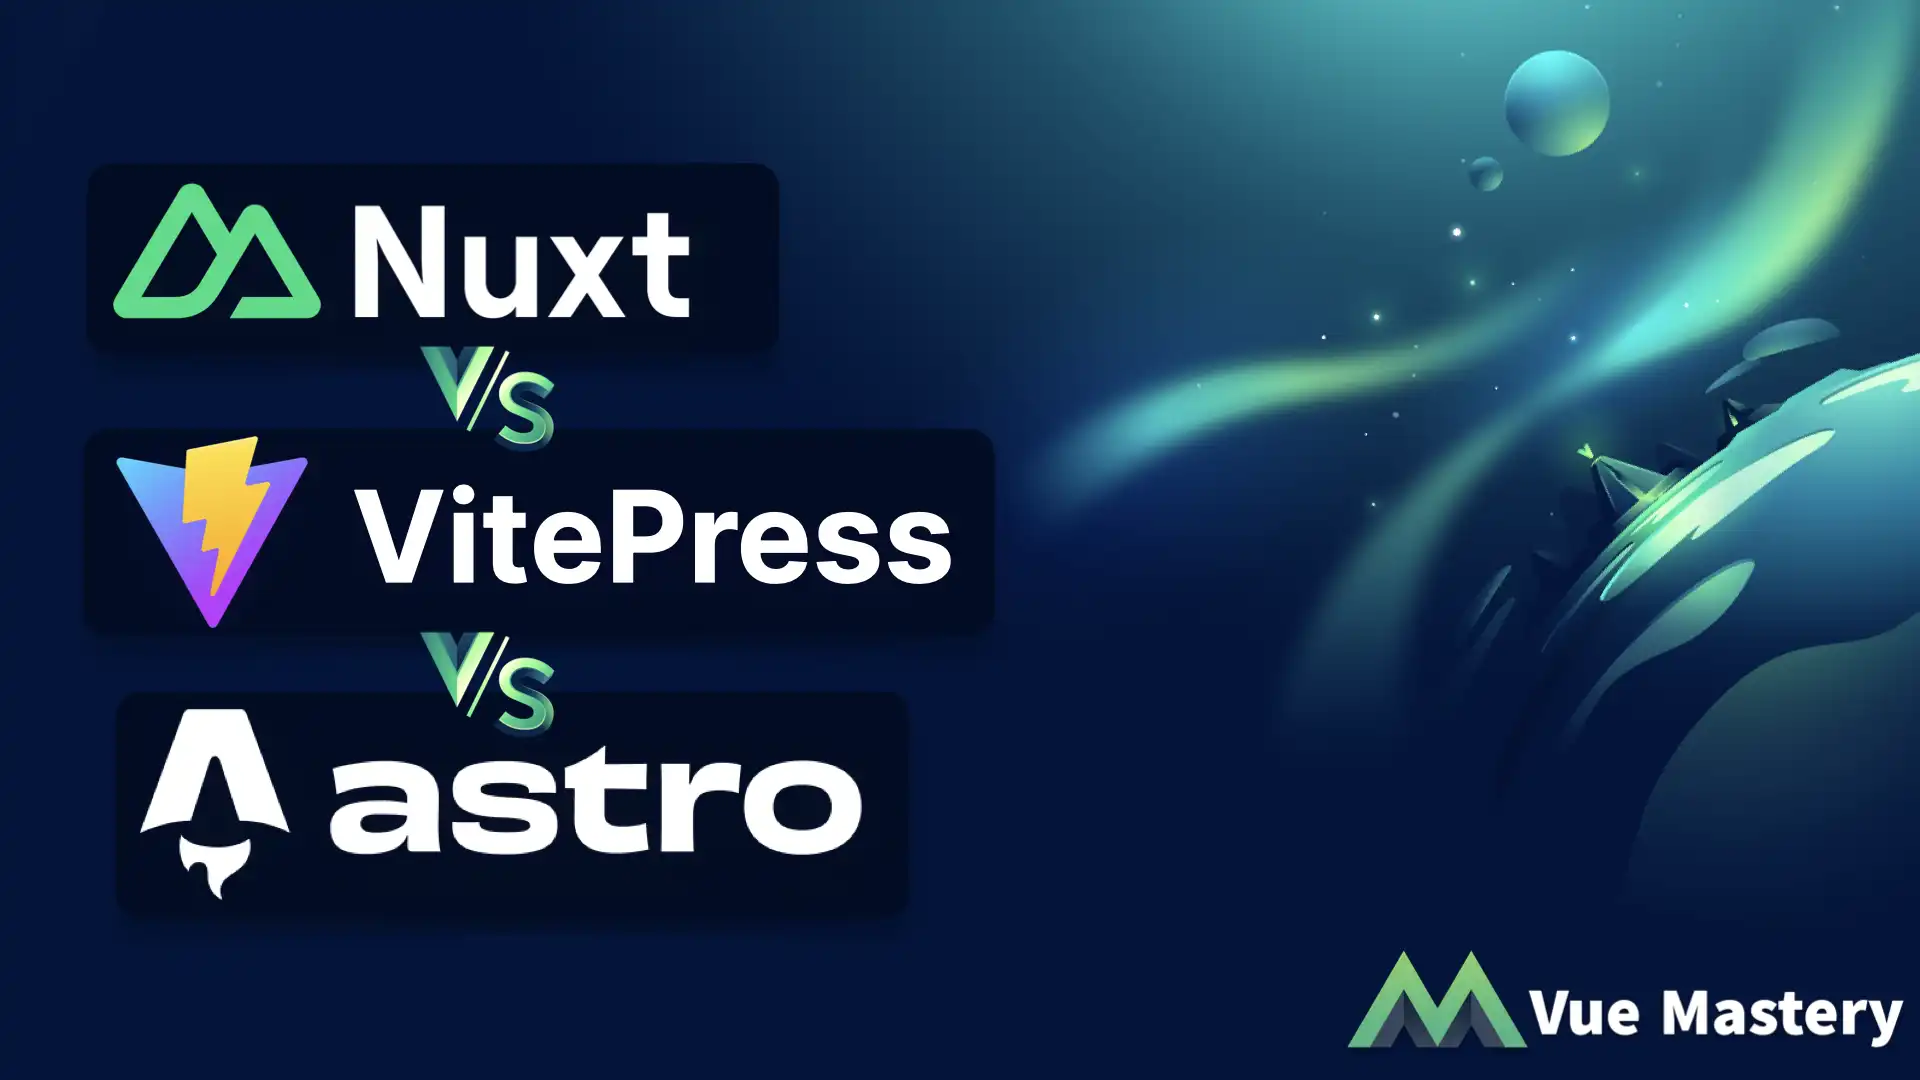 Nuxt vs VitePress vs Astro